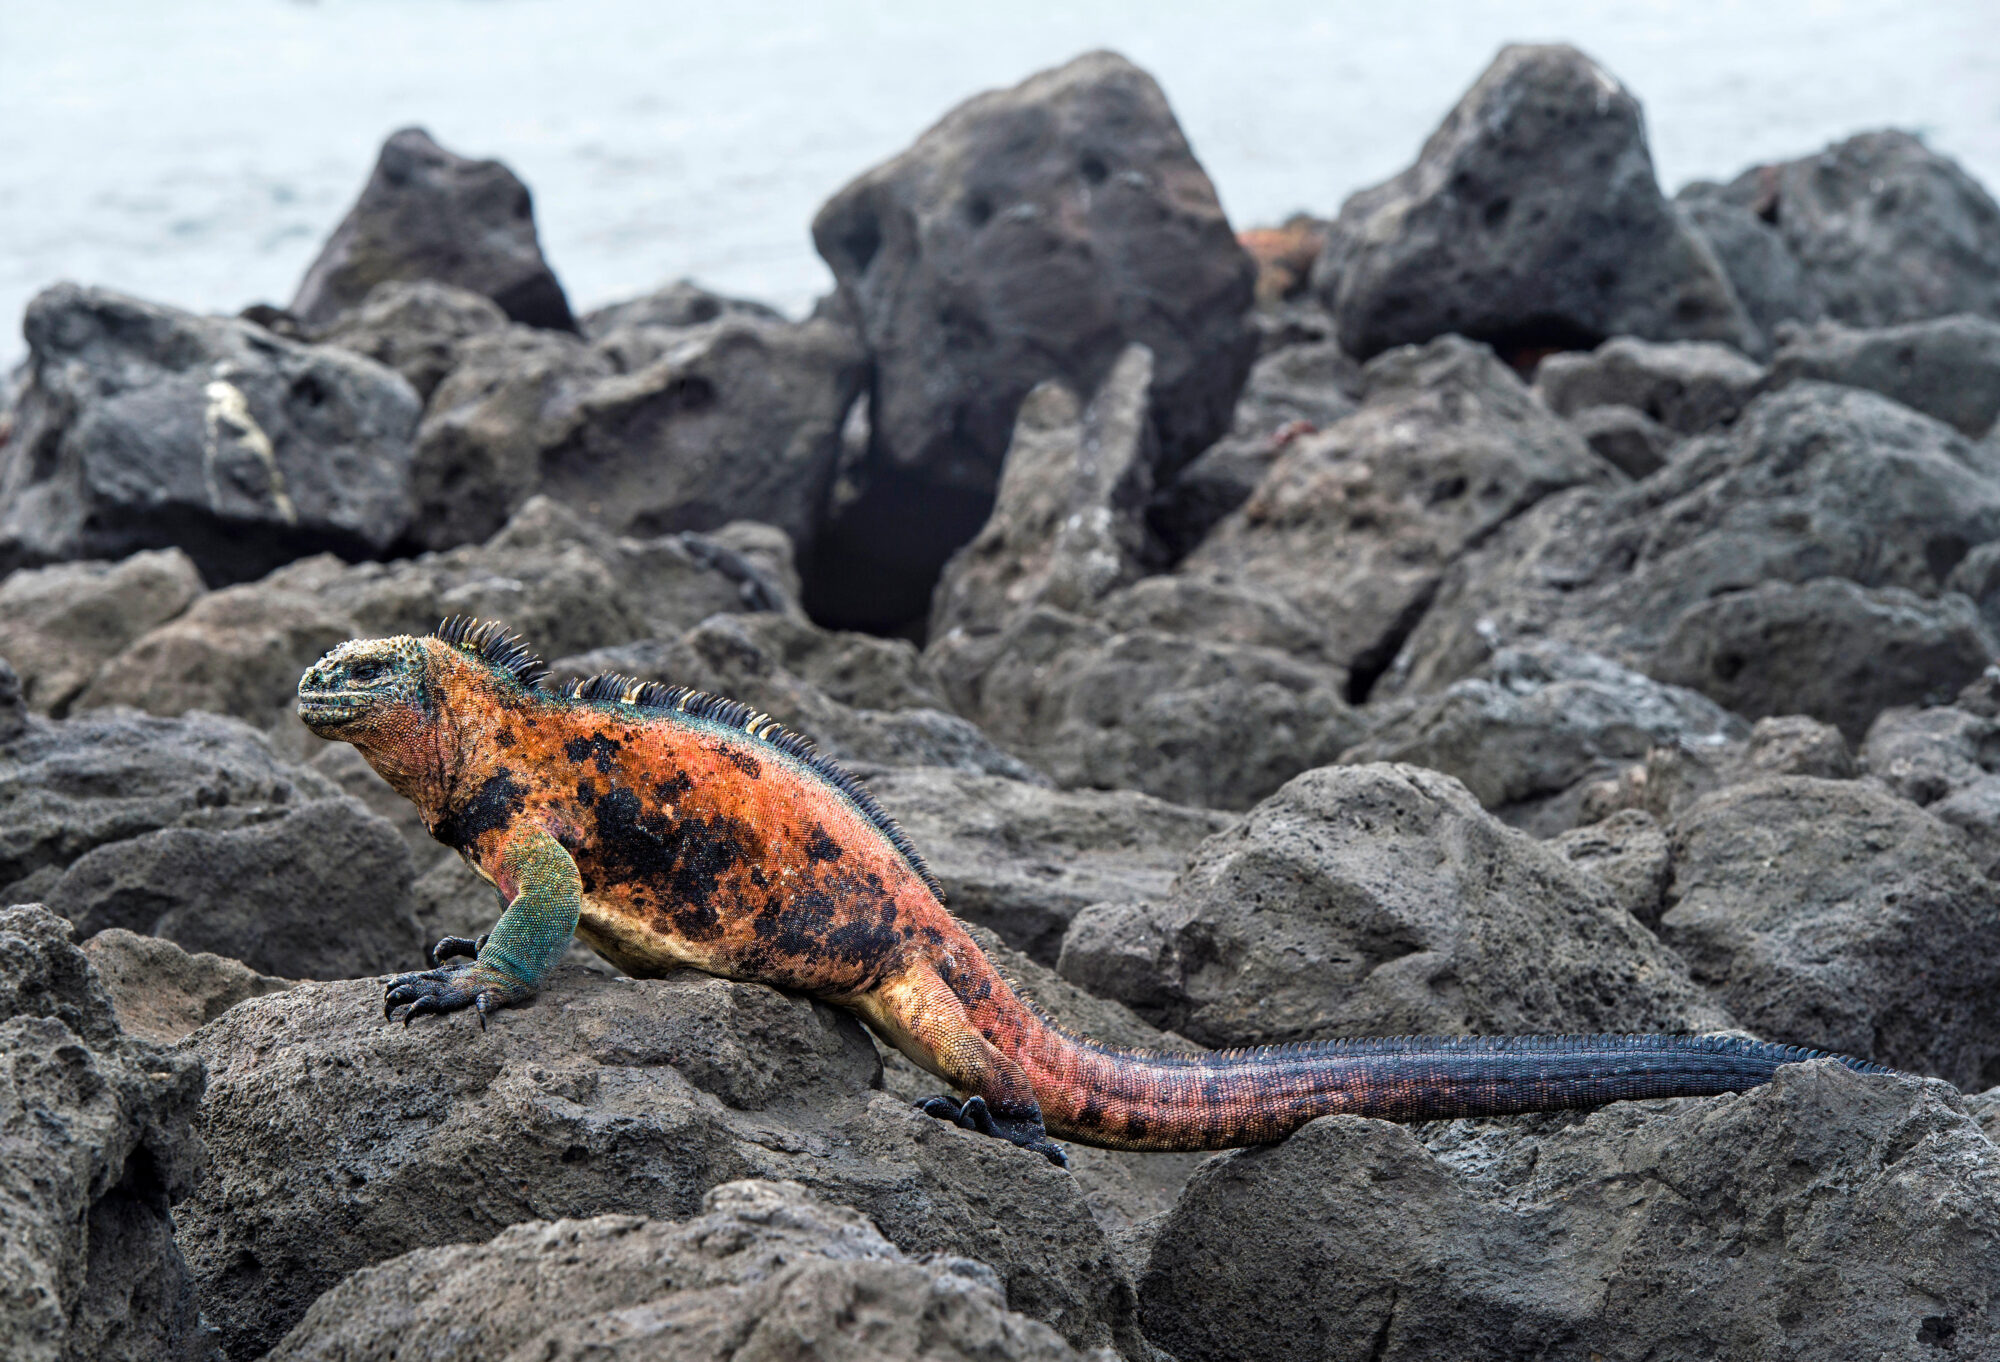 an orange reptile on rocks